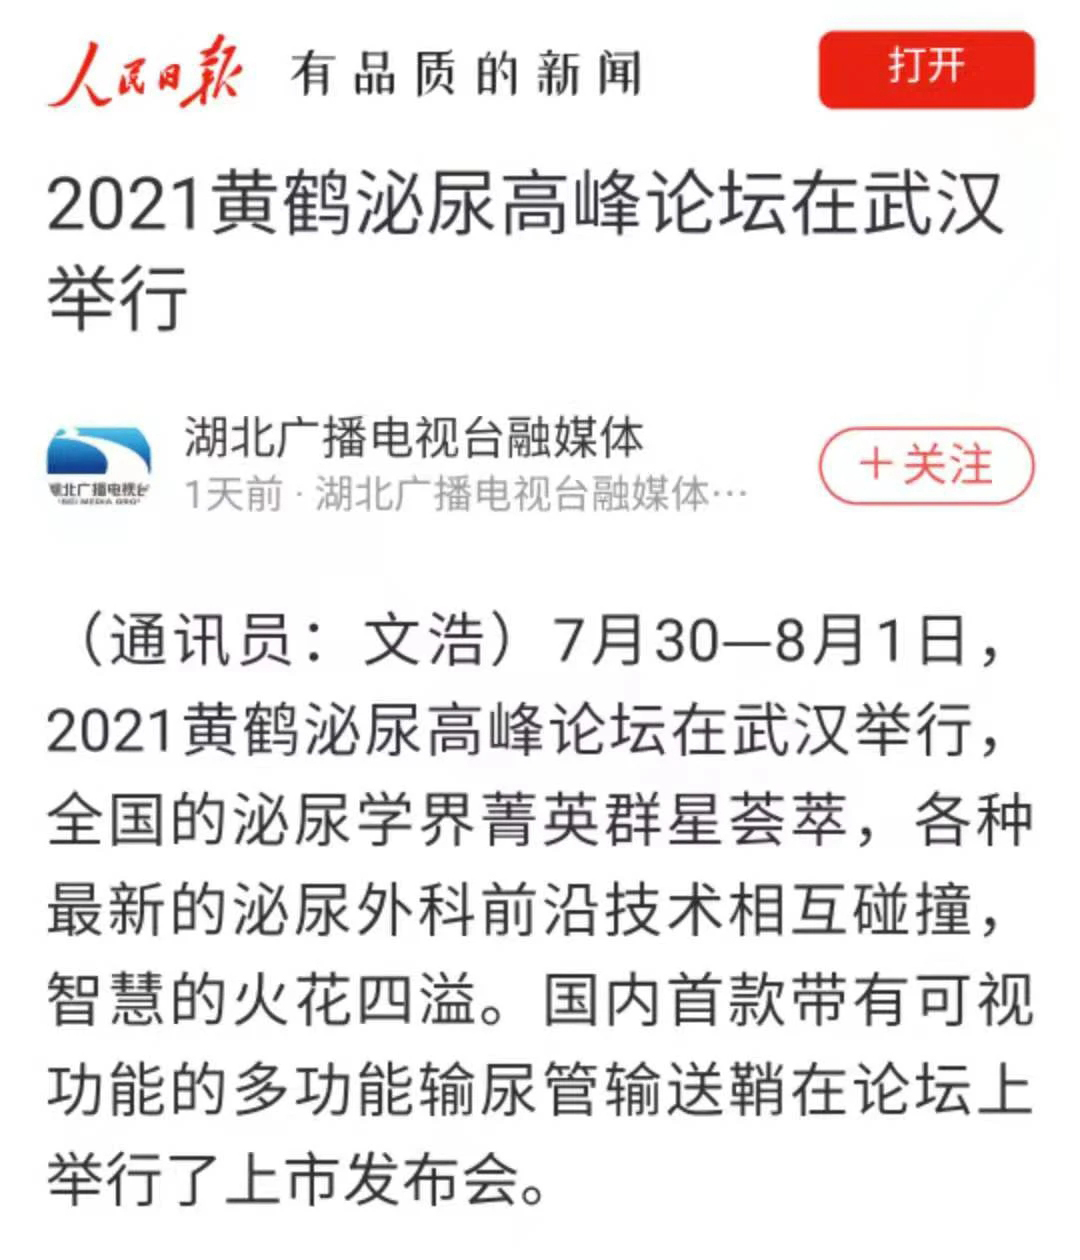 2021黃鶴泌尿高峰論壇在武漢舉行